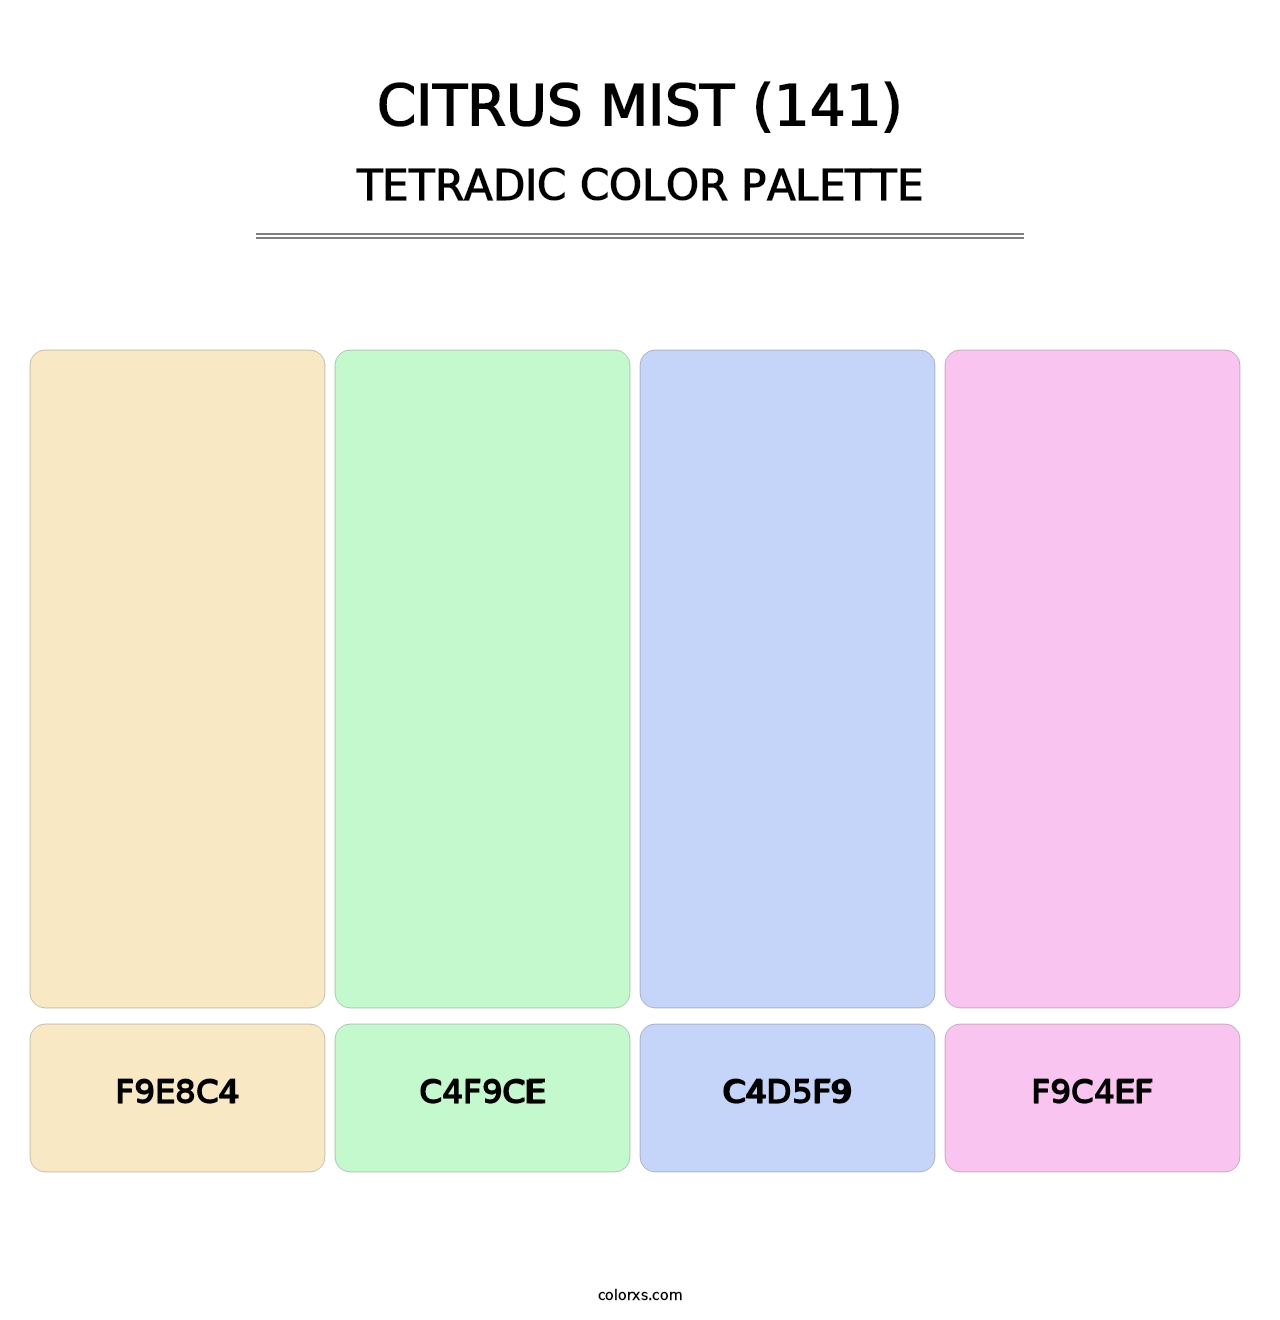 Citrus Mist (141) - Tetradic Color Palette